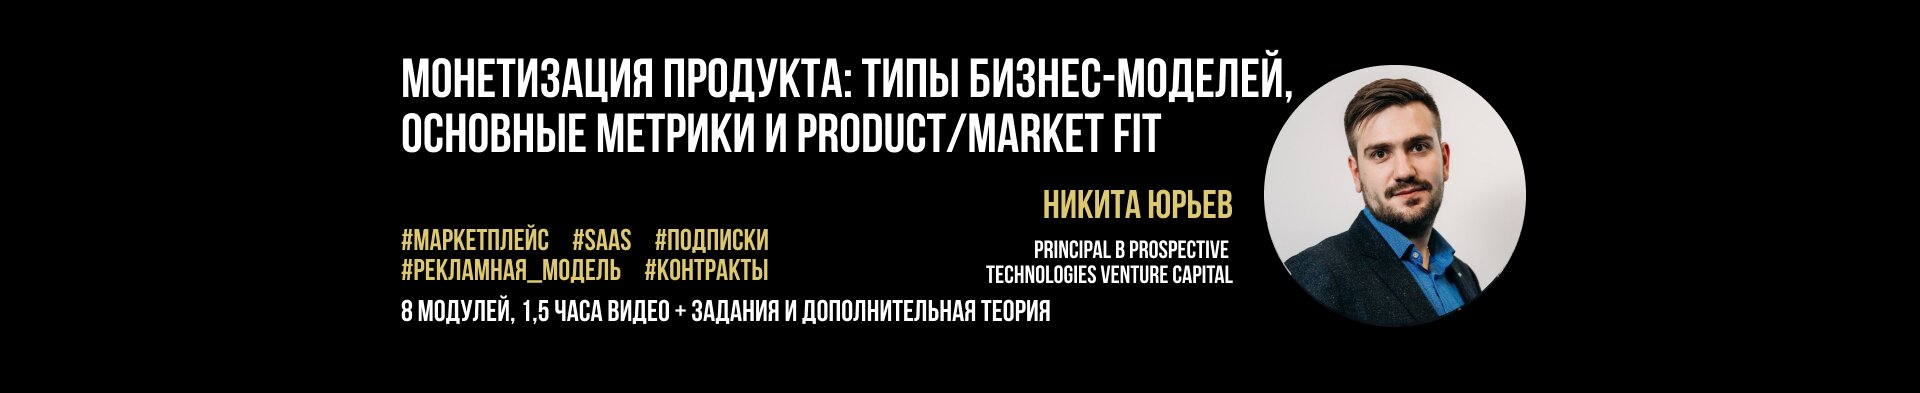 Монетизация продукта: бизнес-модели, основные метрики и product/market fit